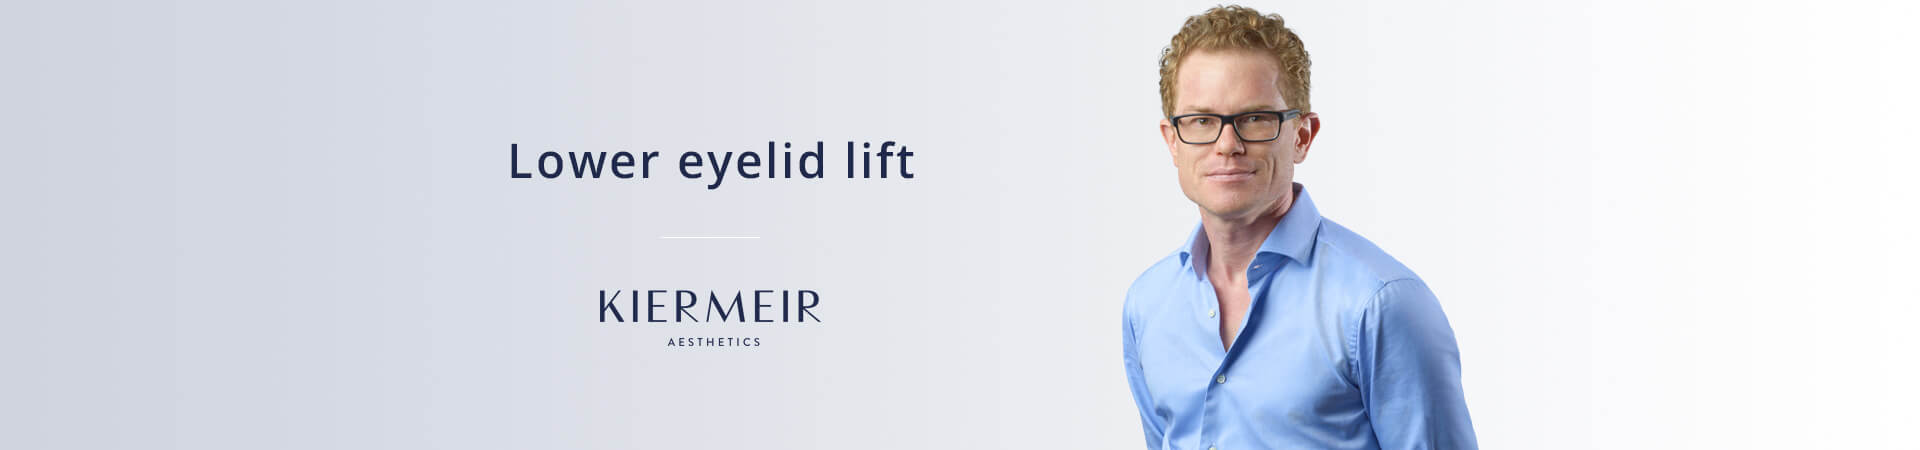 Lower Eyelid Lift in Bern by Dr. Kiermeir 